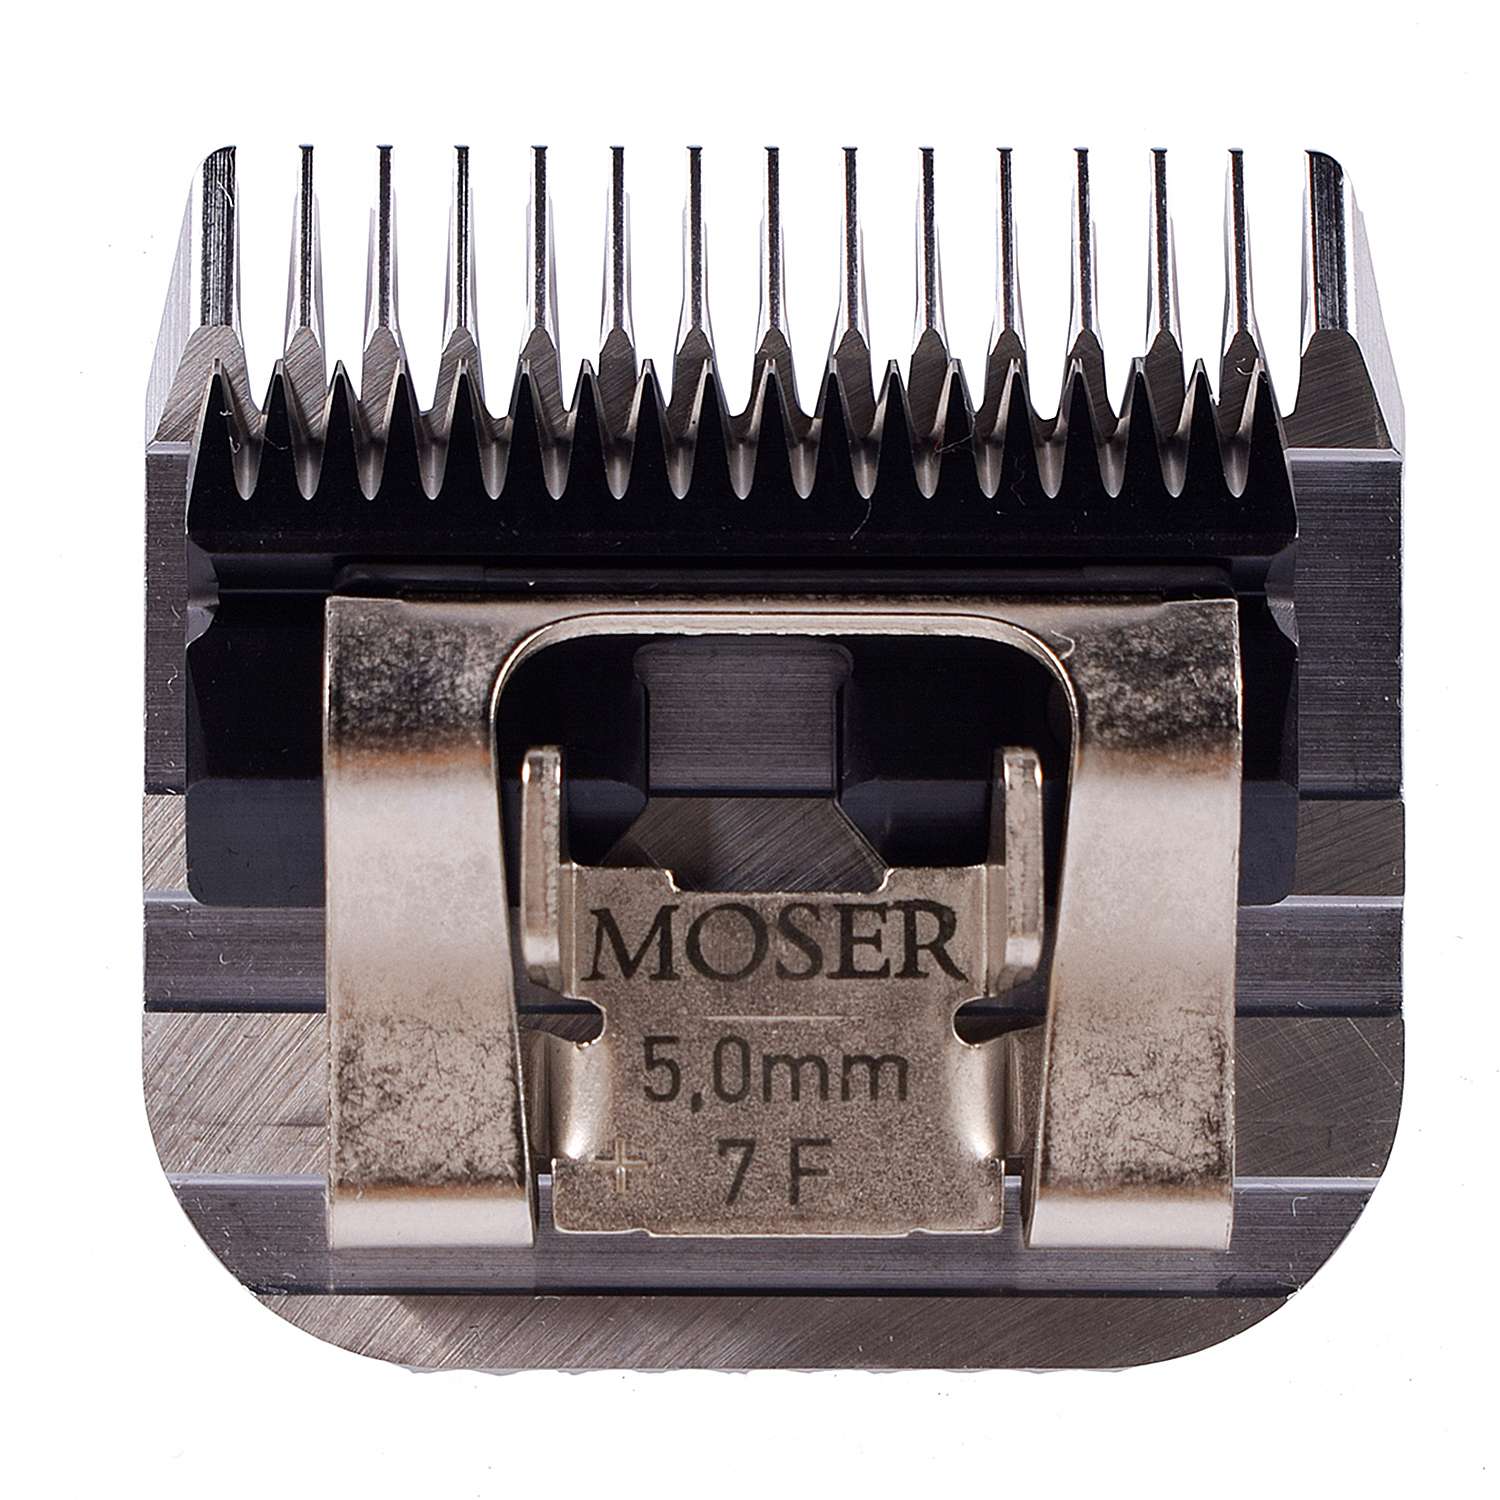 Машинка мозер 45. Ножевой блок Мозер 2мм. Мозер 1245-7360. Нож Moser 1245-7360 №7f (5 мм). Ножевой блок "Moser 30f", для машинки "Moser Max 45", съемный, 1 мм.